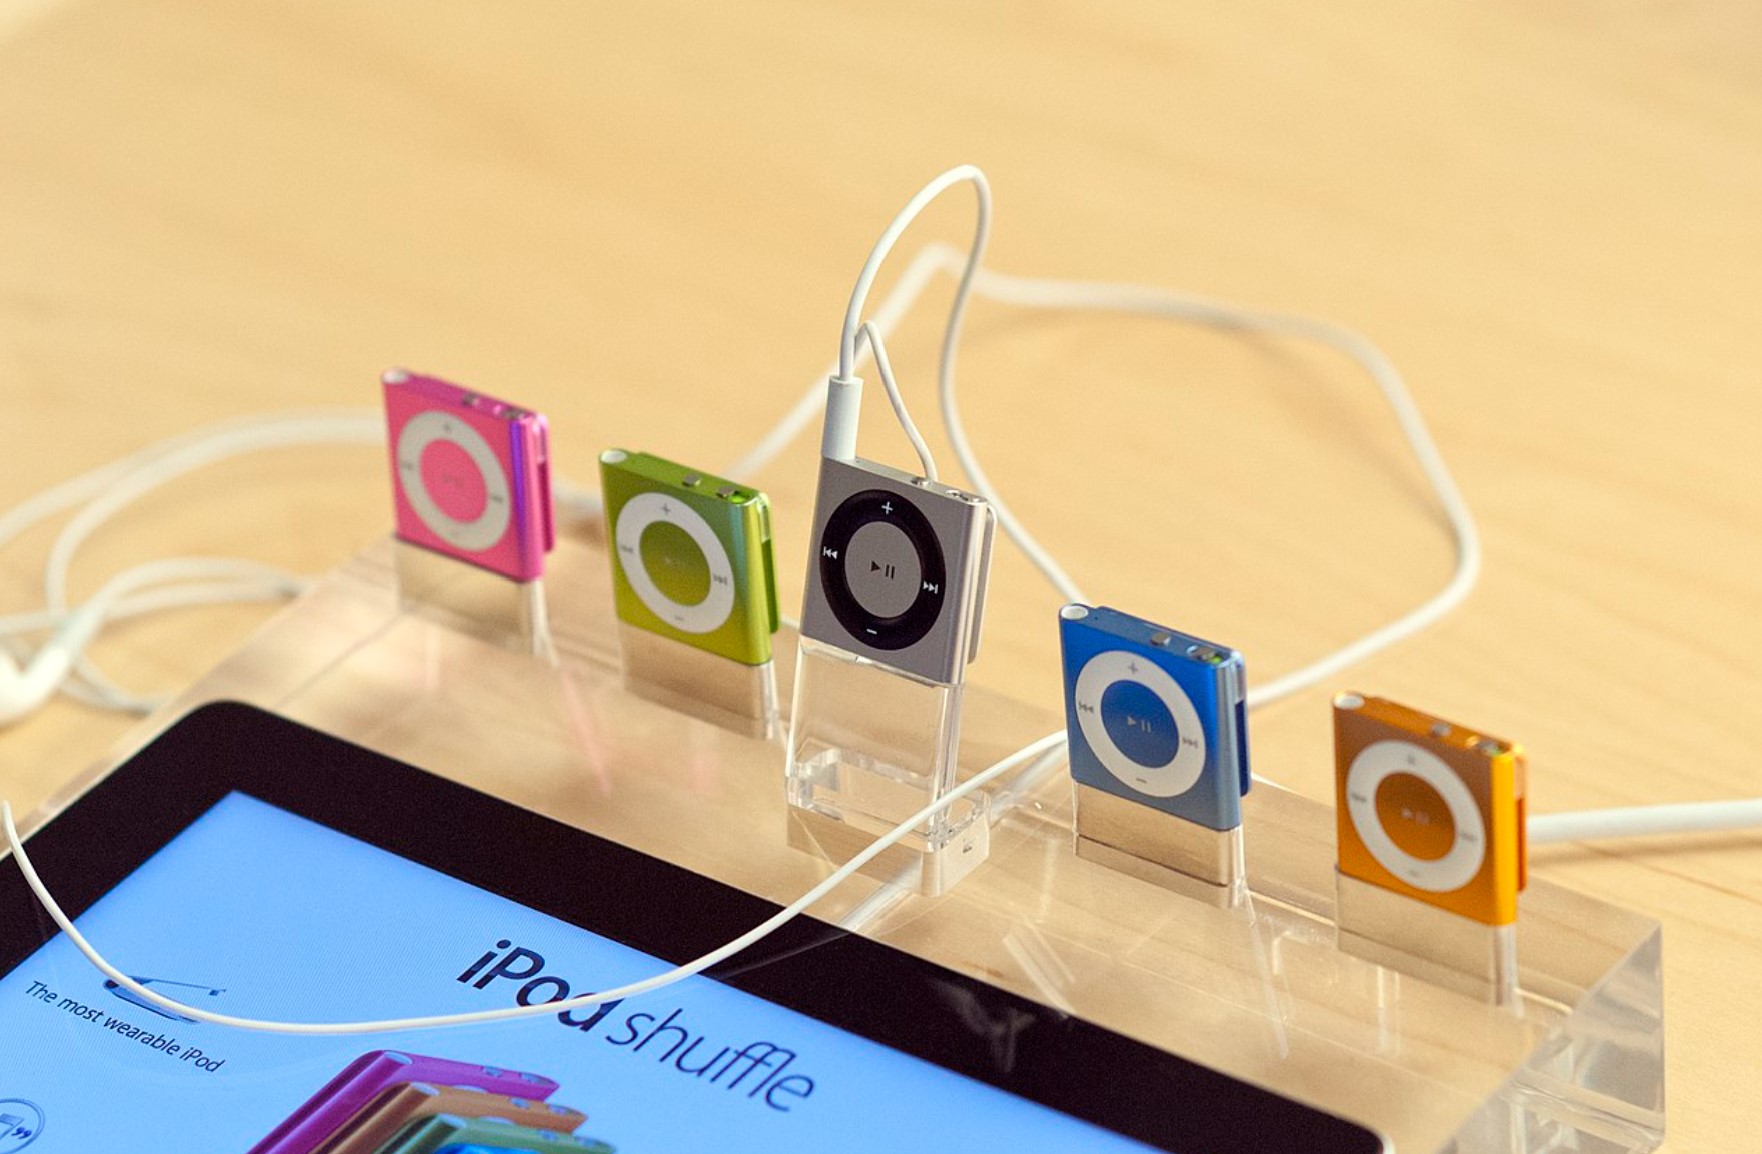 iPod Shuffle 19 năm nhìn lại: Thiết bị bé nhỏ tạo ra tác động to lớn đến cách chúng ta nghe nhạc- Ảnh 4.